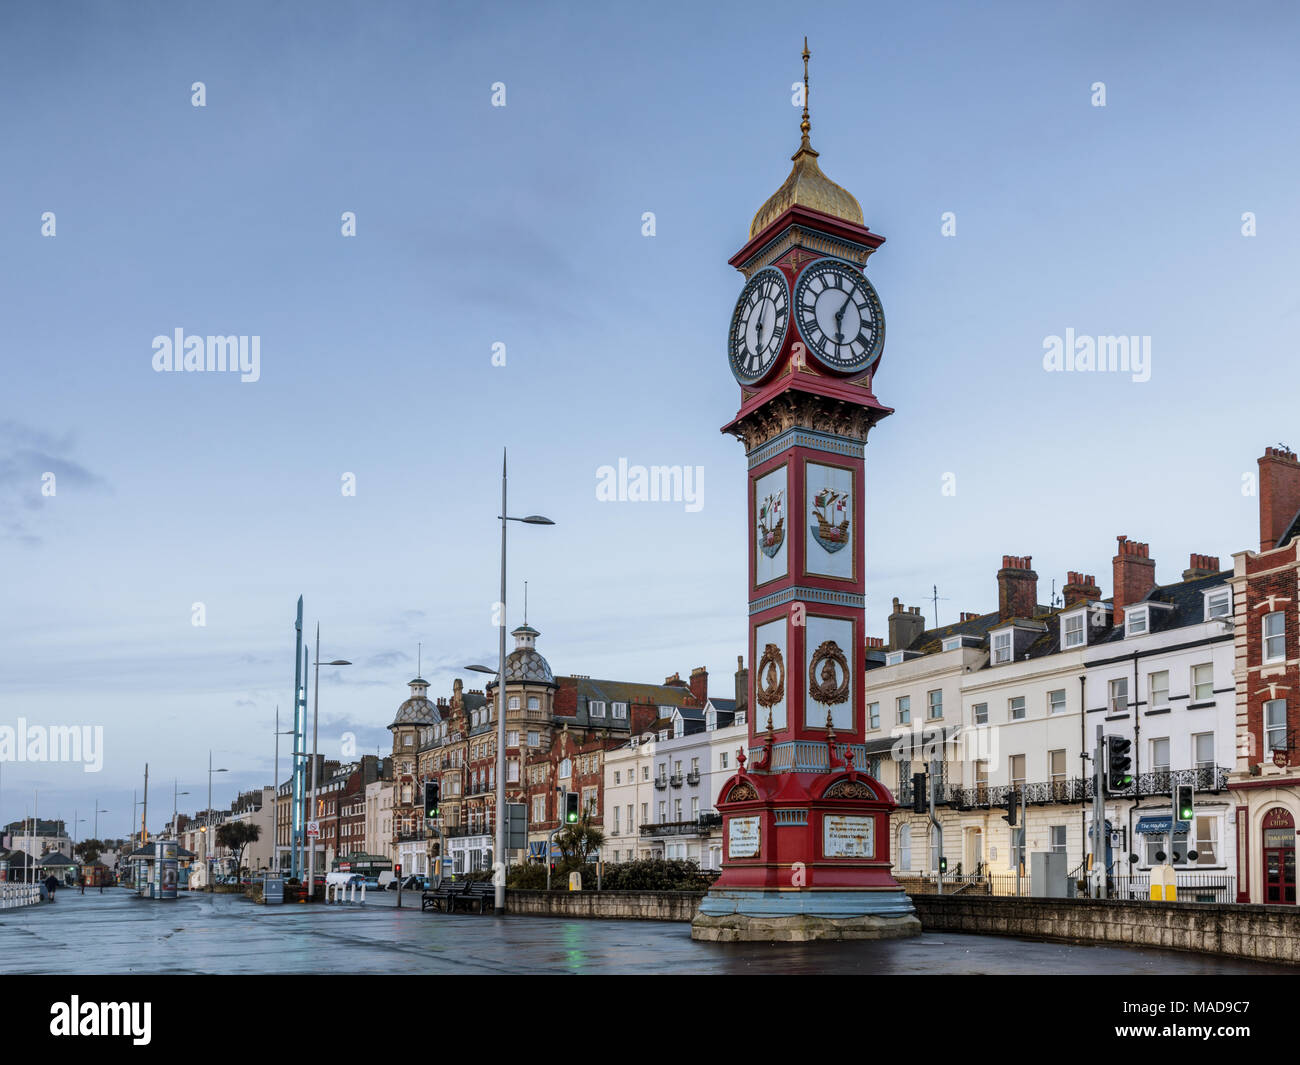 Jubilé de la tour de l'horloge sur la Promenade à Weymouth, dans le Dorset, Angleterre, Royaume-Uni. Construite en 1887 pour marquer le jubilé du règne de la reine Victoria. Banque D'Images